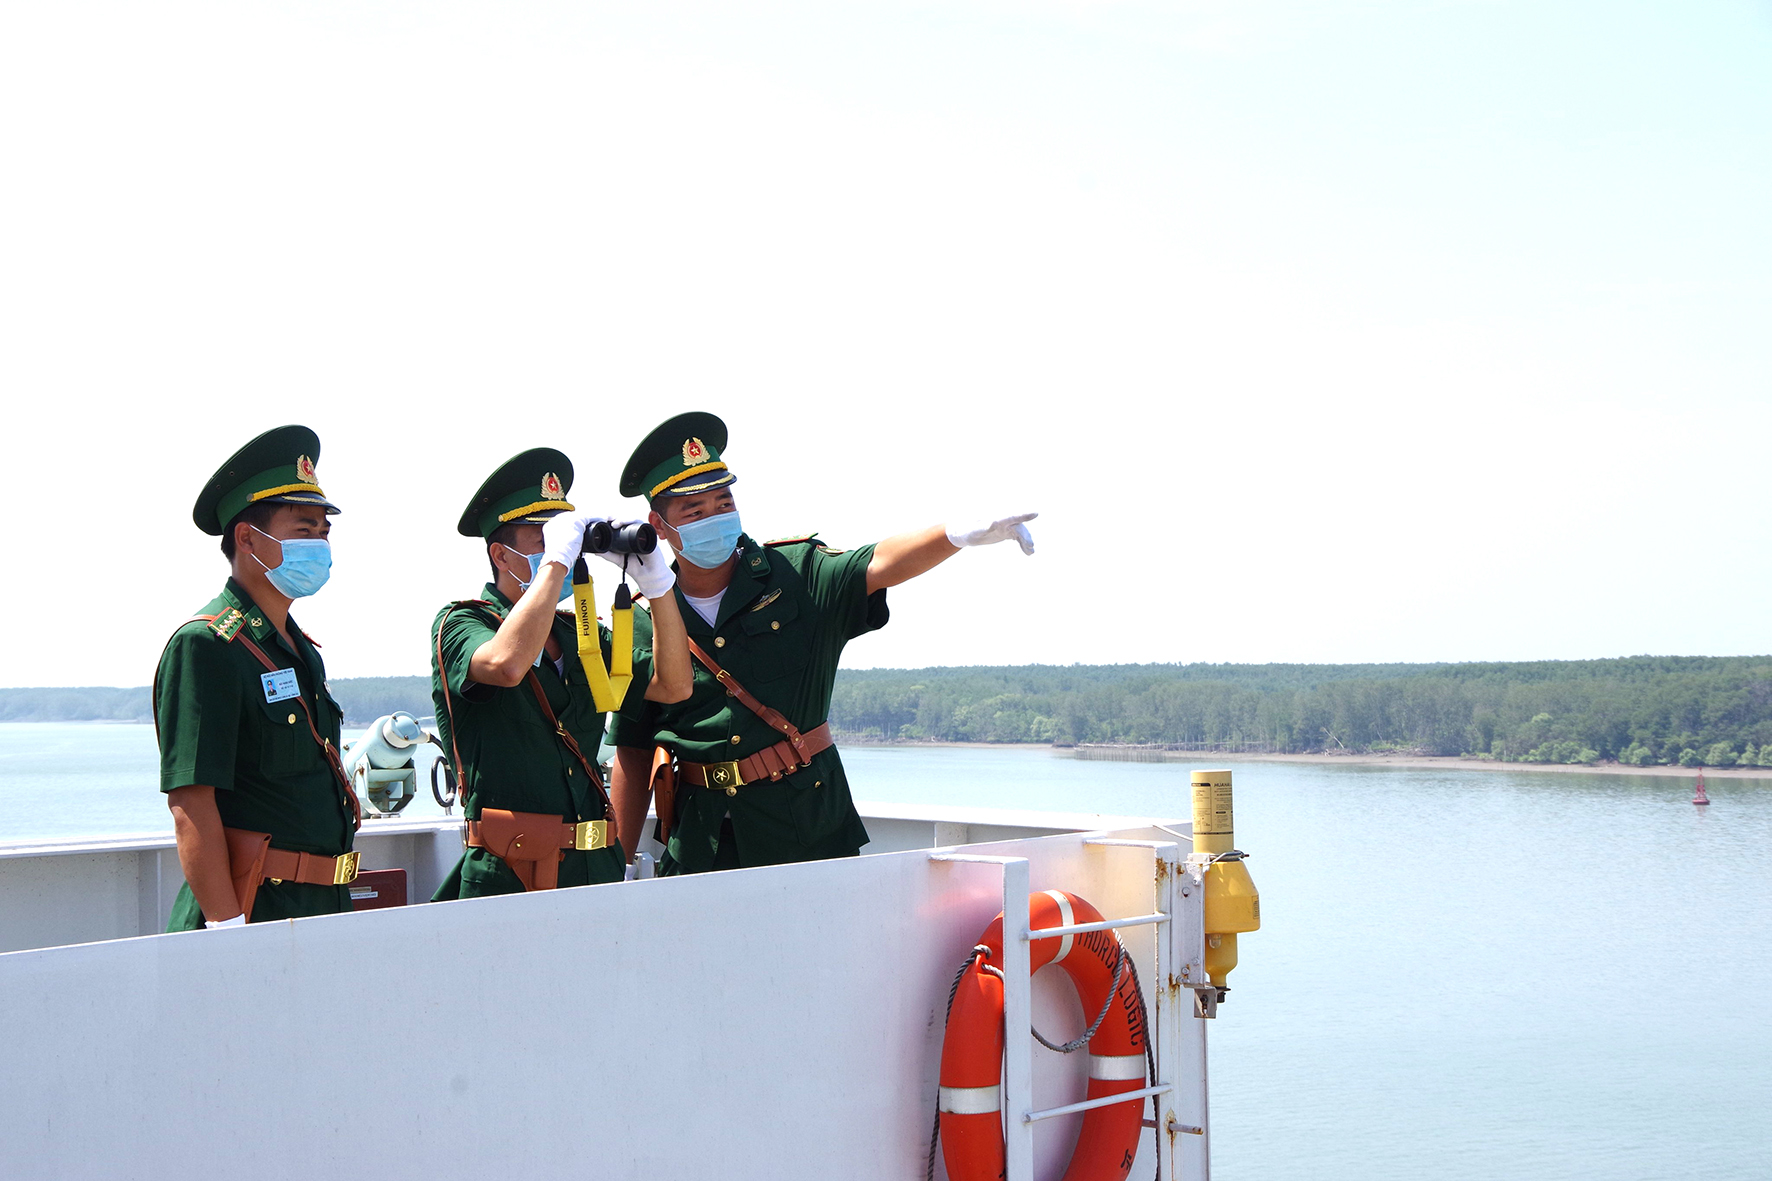 Lực lượng BĐBP tỉnh tuần tra, kiểm soát các phương tiện ra vào cảng Phú Mỹ để ngăn chặn tình trạng xuất nhập cảnh trái phép từ đường biển.